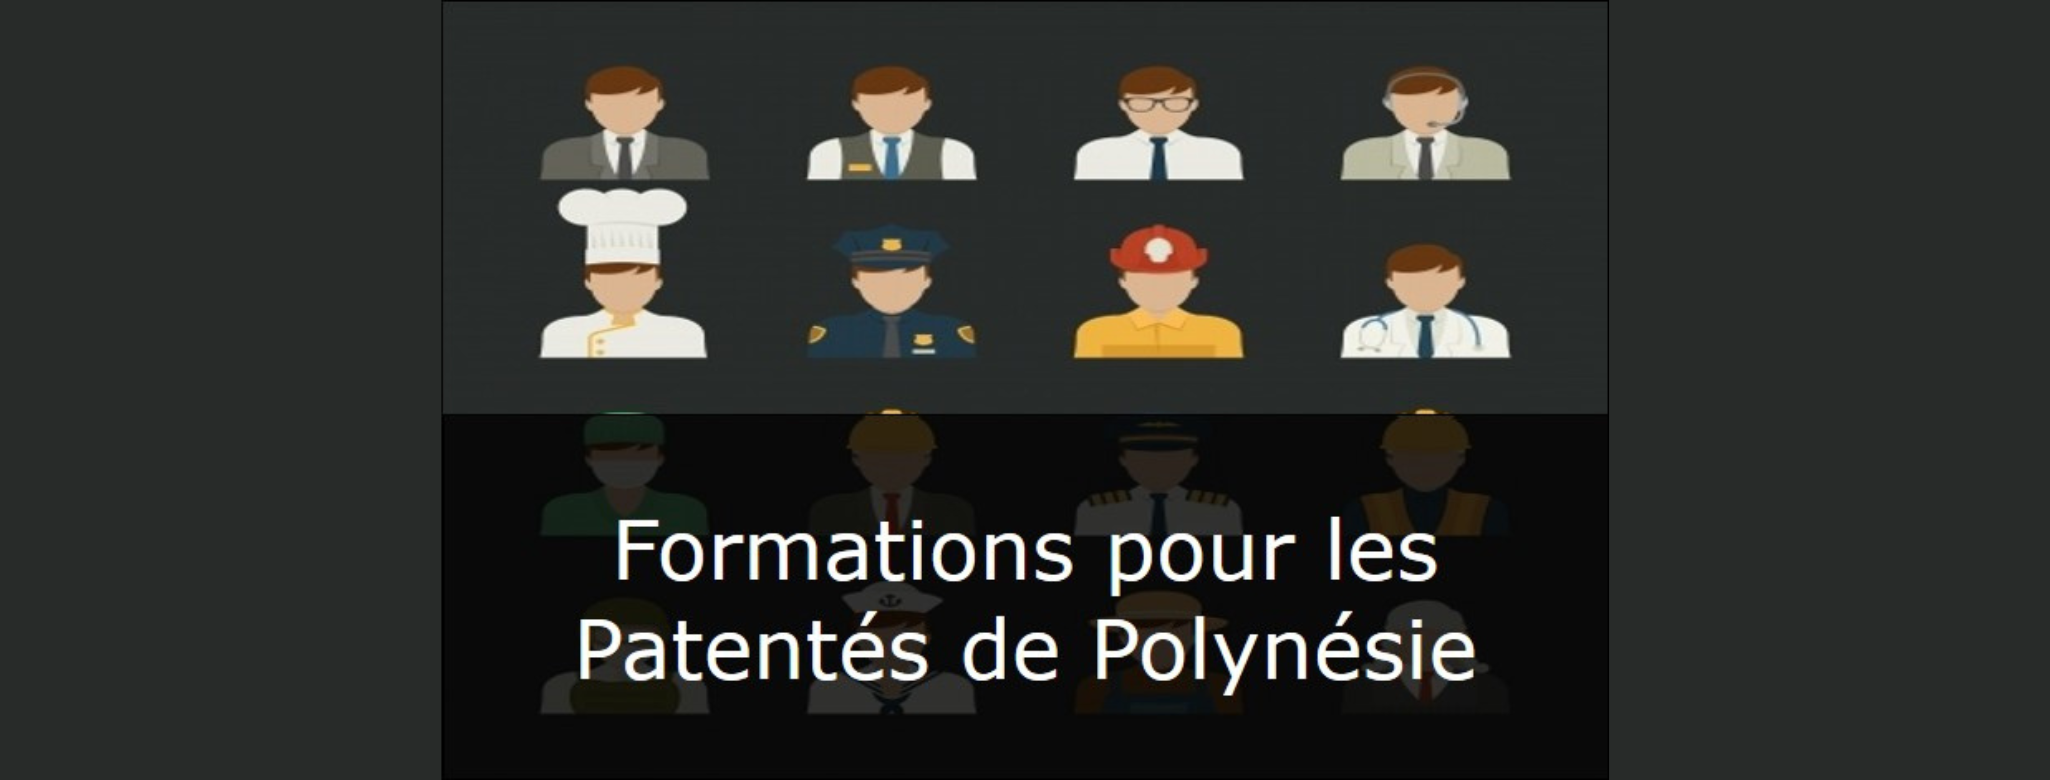 Patentés de Polynésie